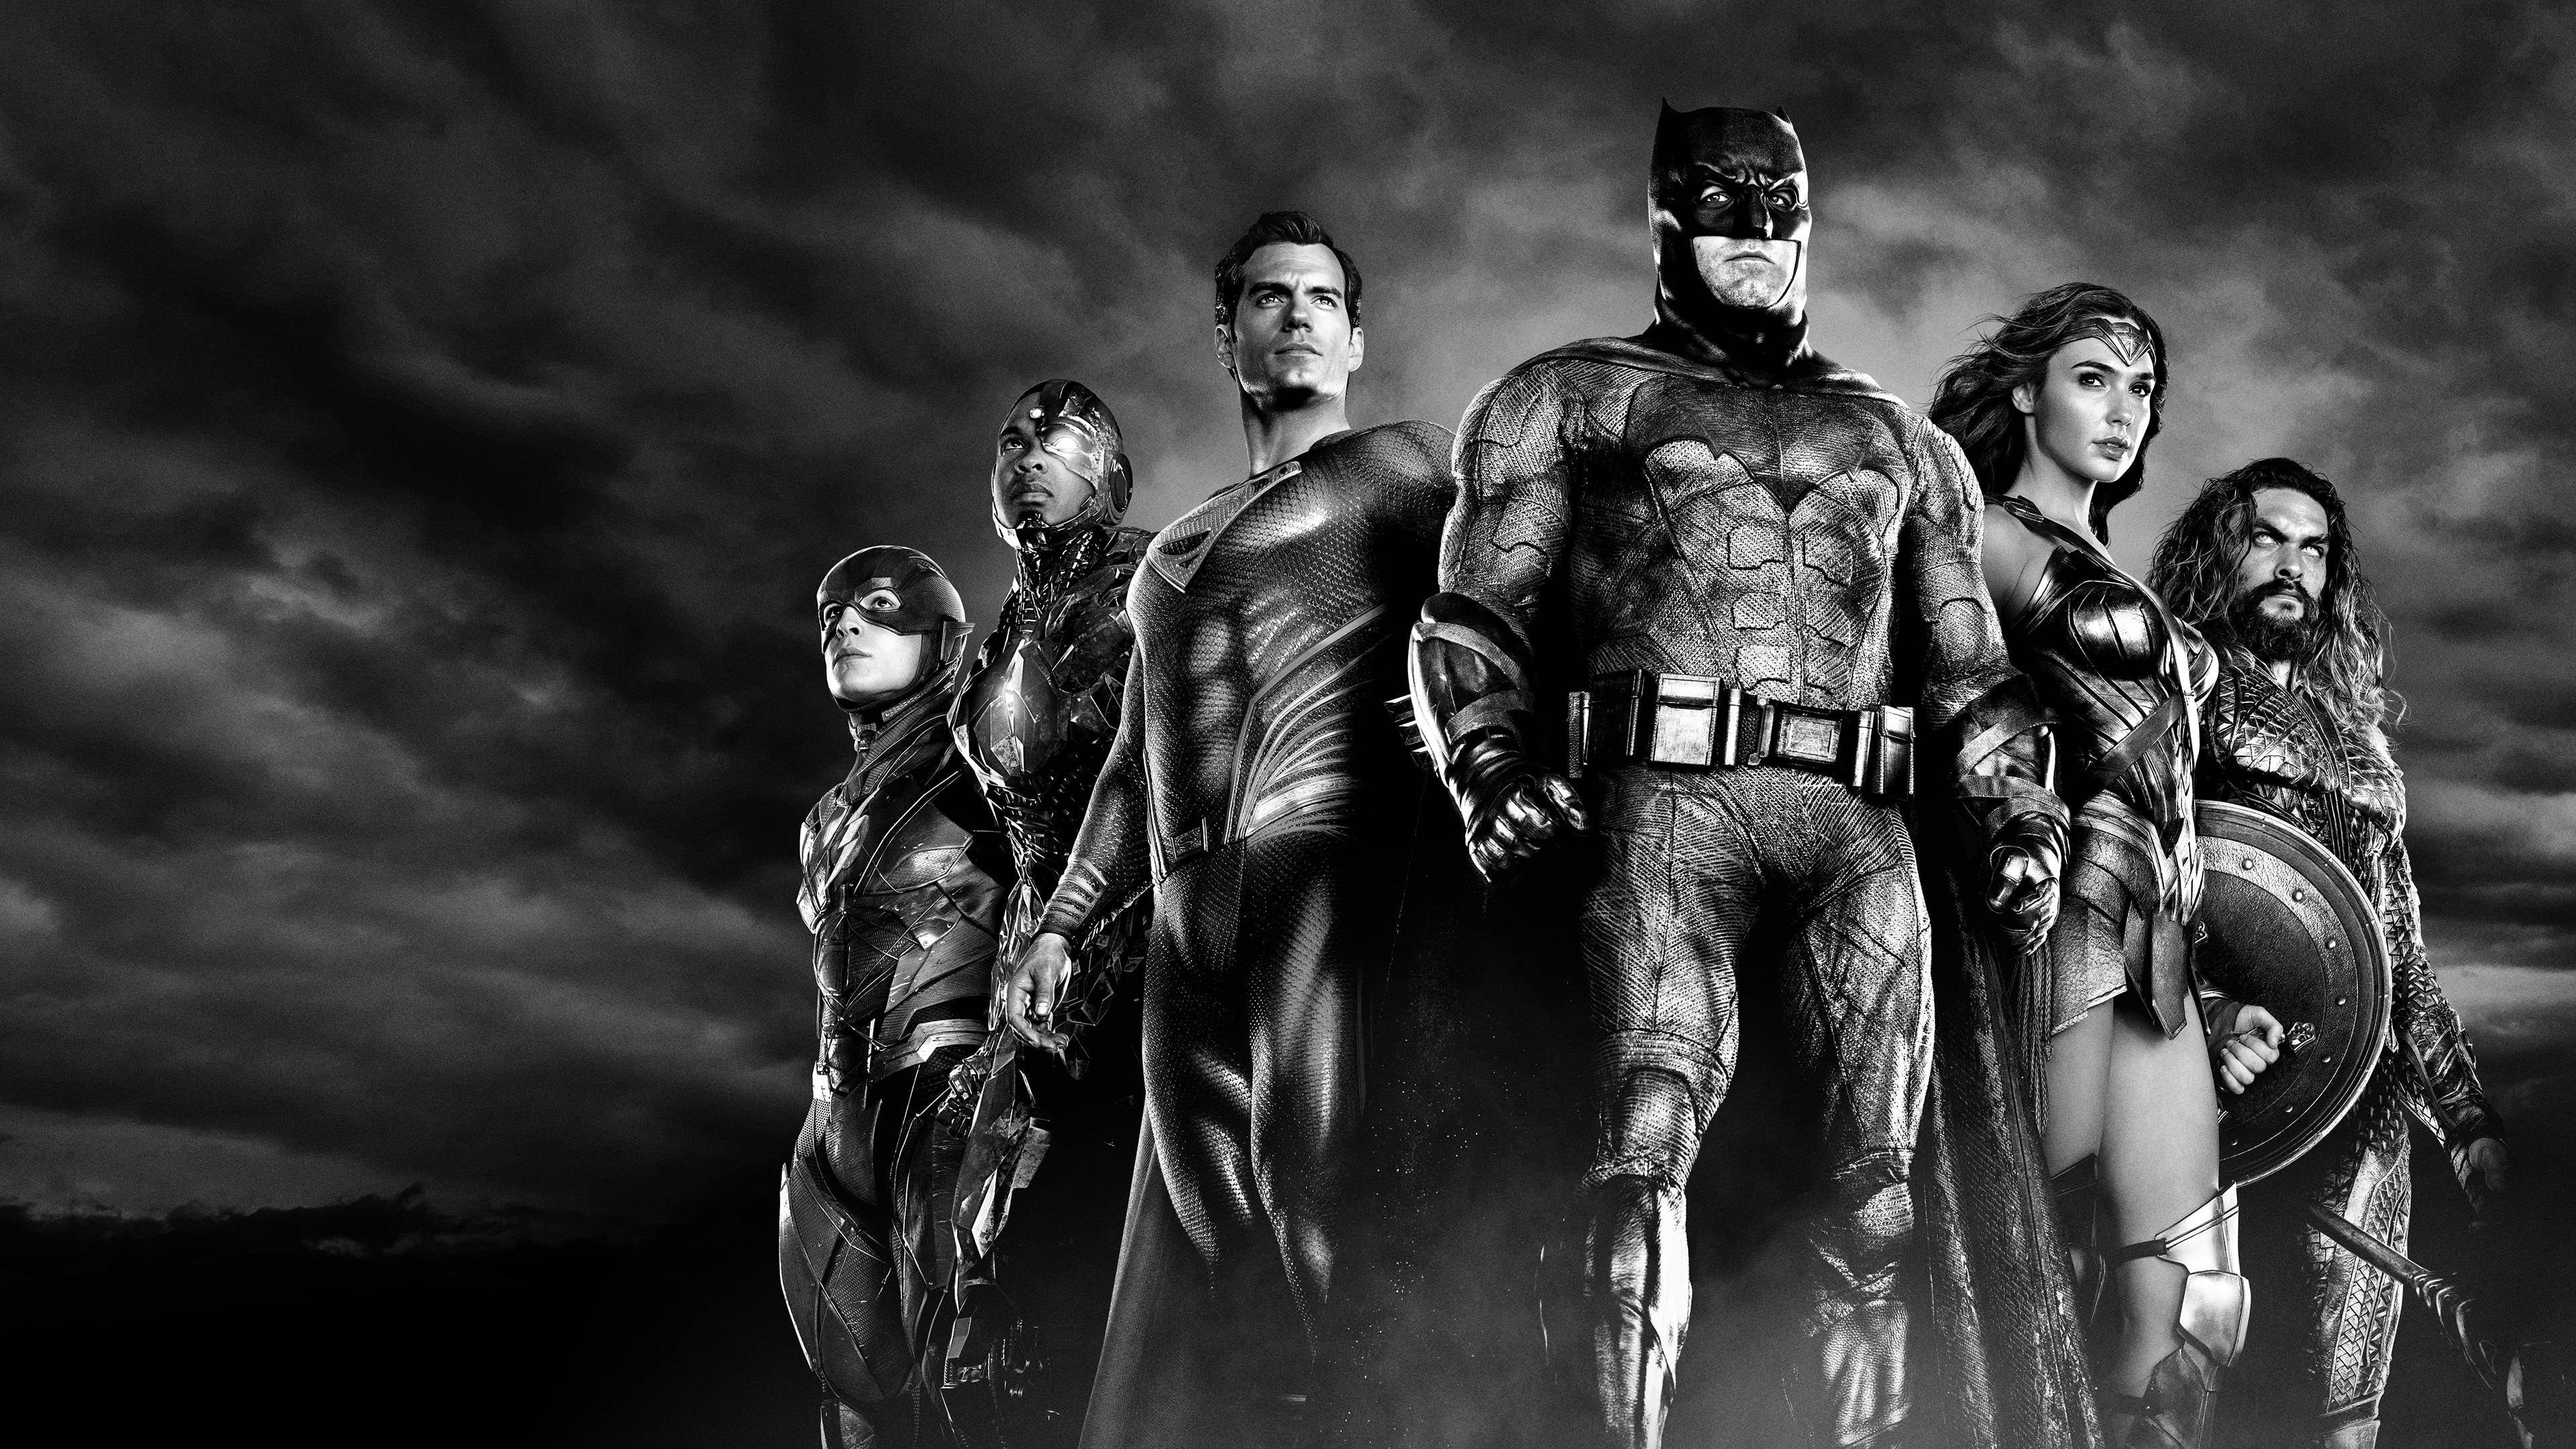 zack snyder's justice league, movie, aquaman, barry allen, batman, cyborg (dc comics), flash, justice league, superman, wonder woman